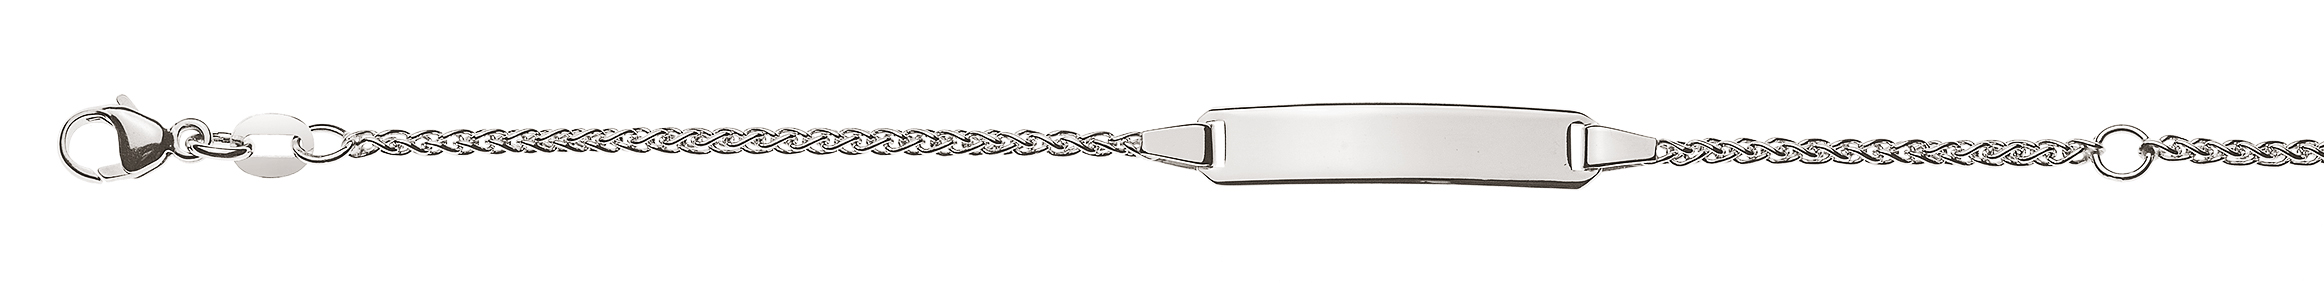 AURONOS Élégance ID-Bracelet 14k Weissgold Zopfkette 16cm